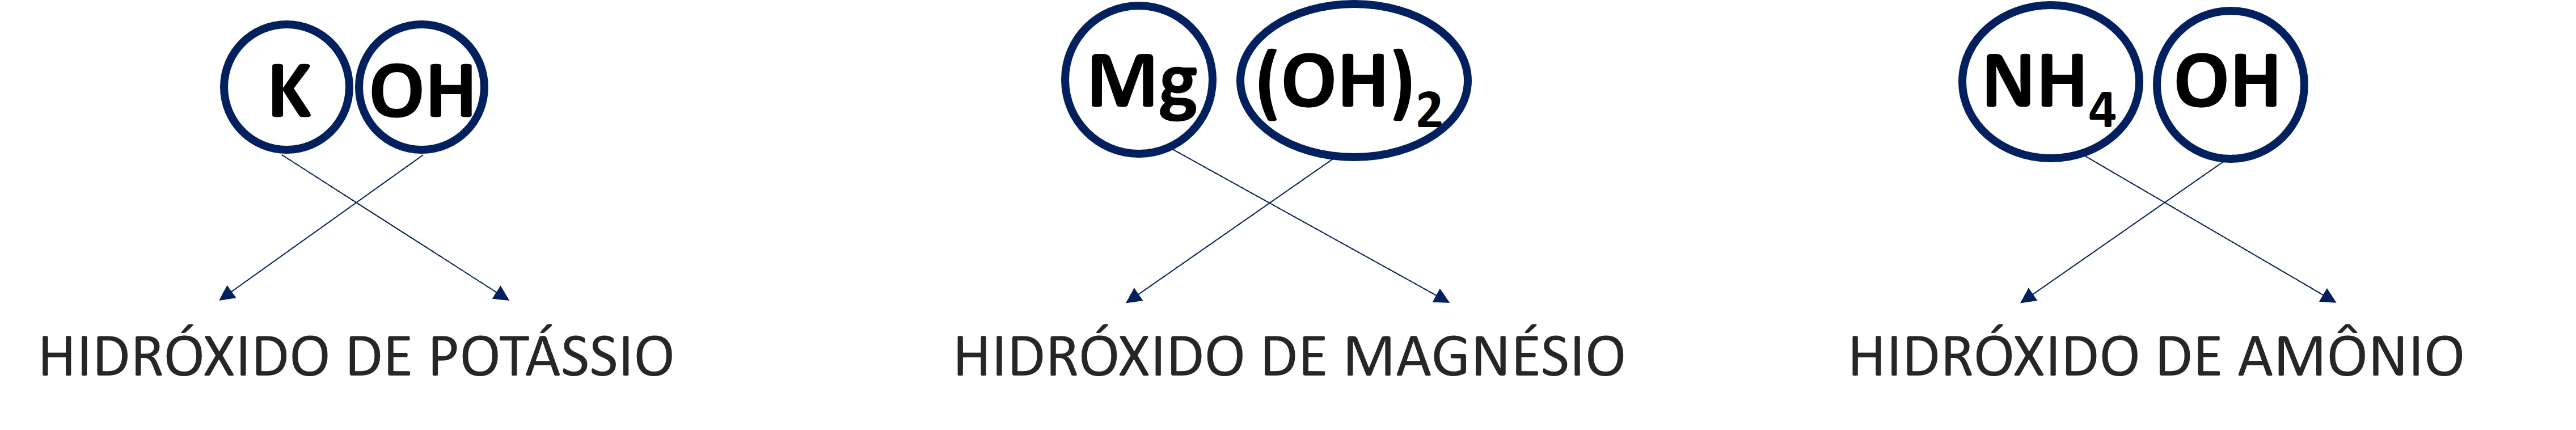 Exemplos de fÃ³rmula molecular e nomenclatura de bases.